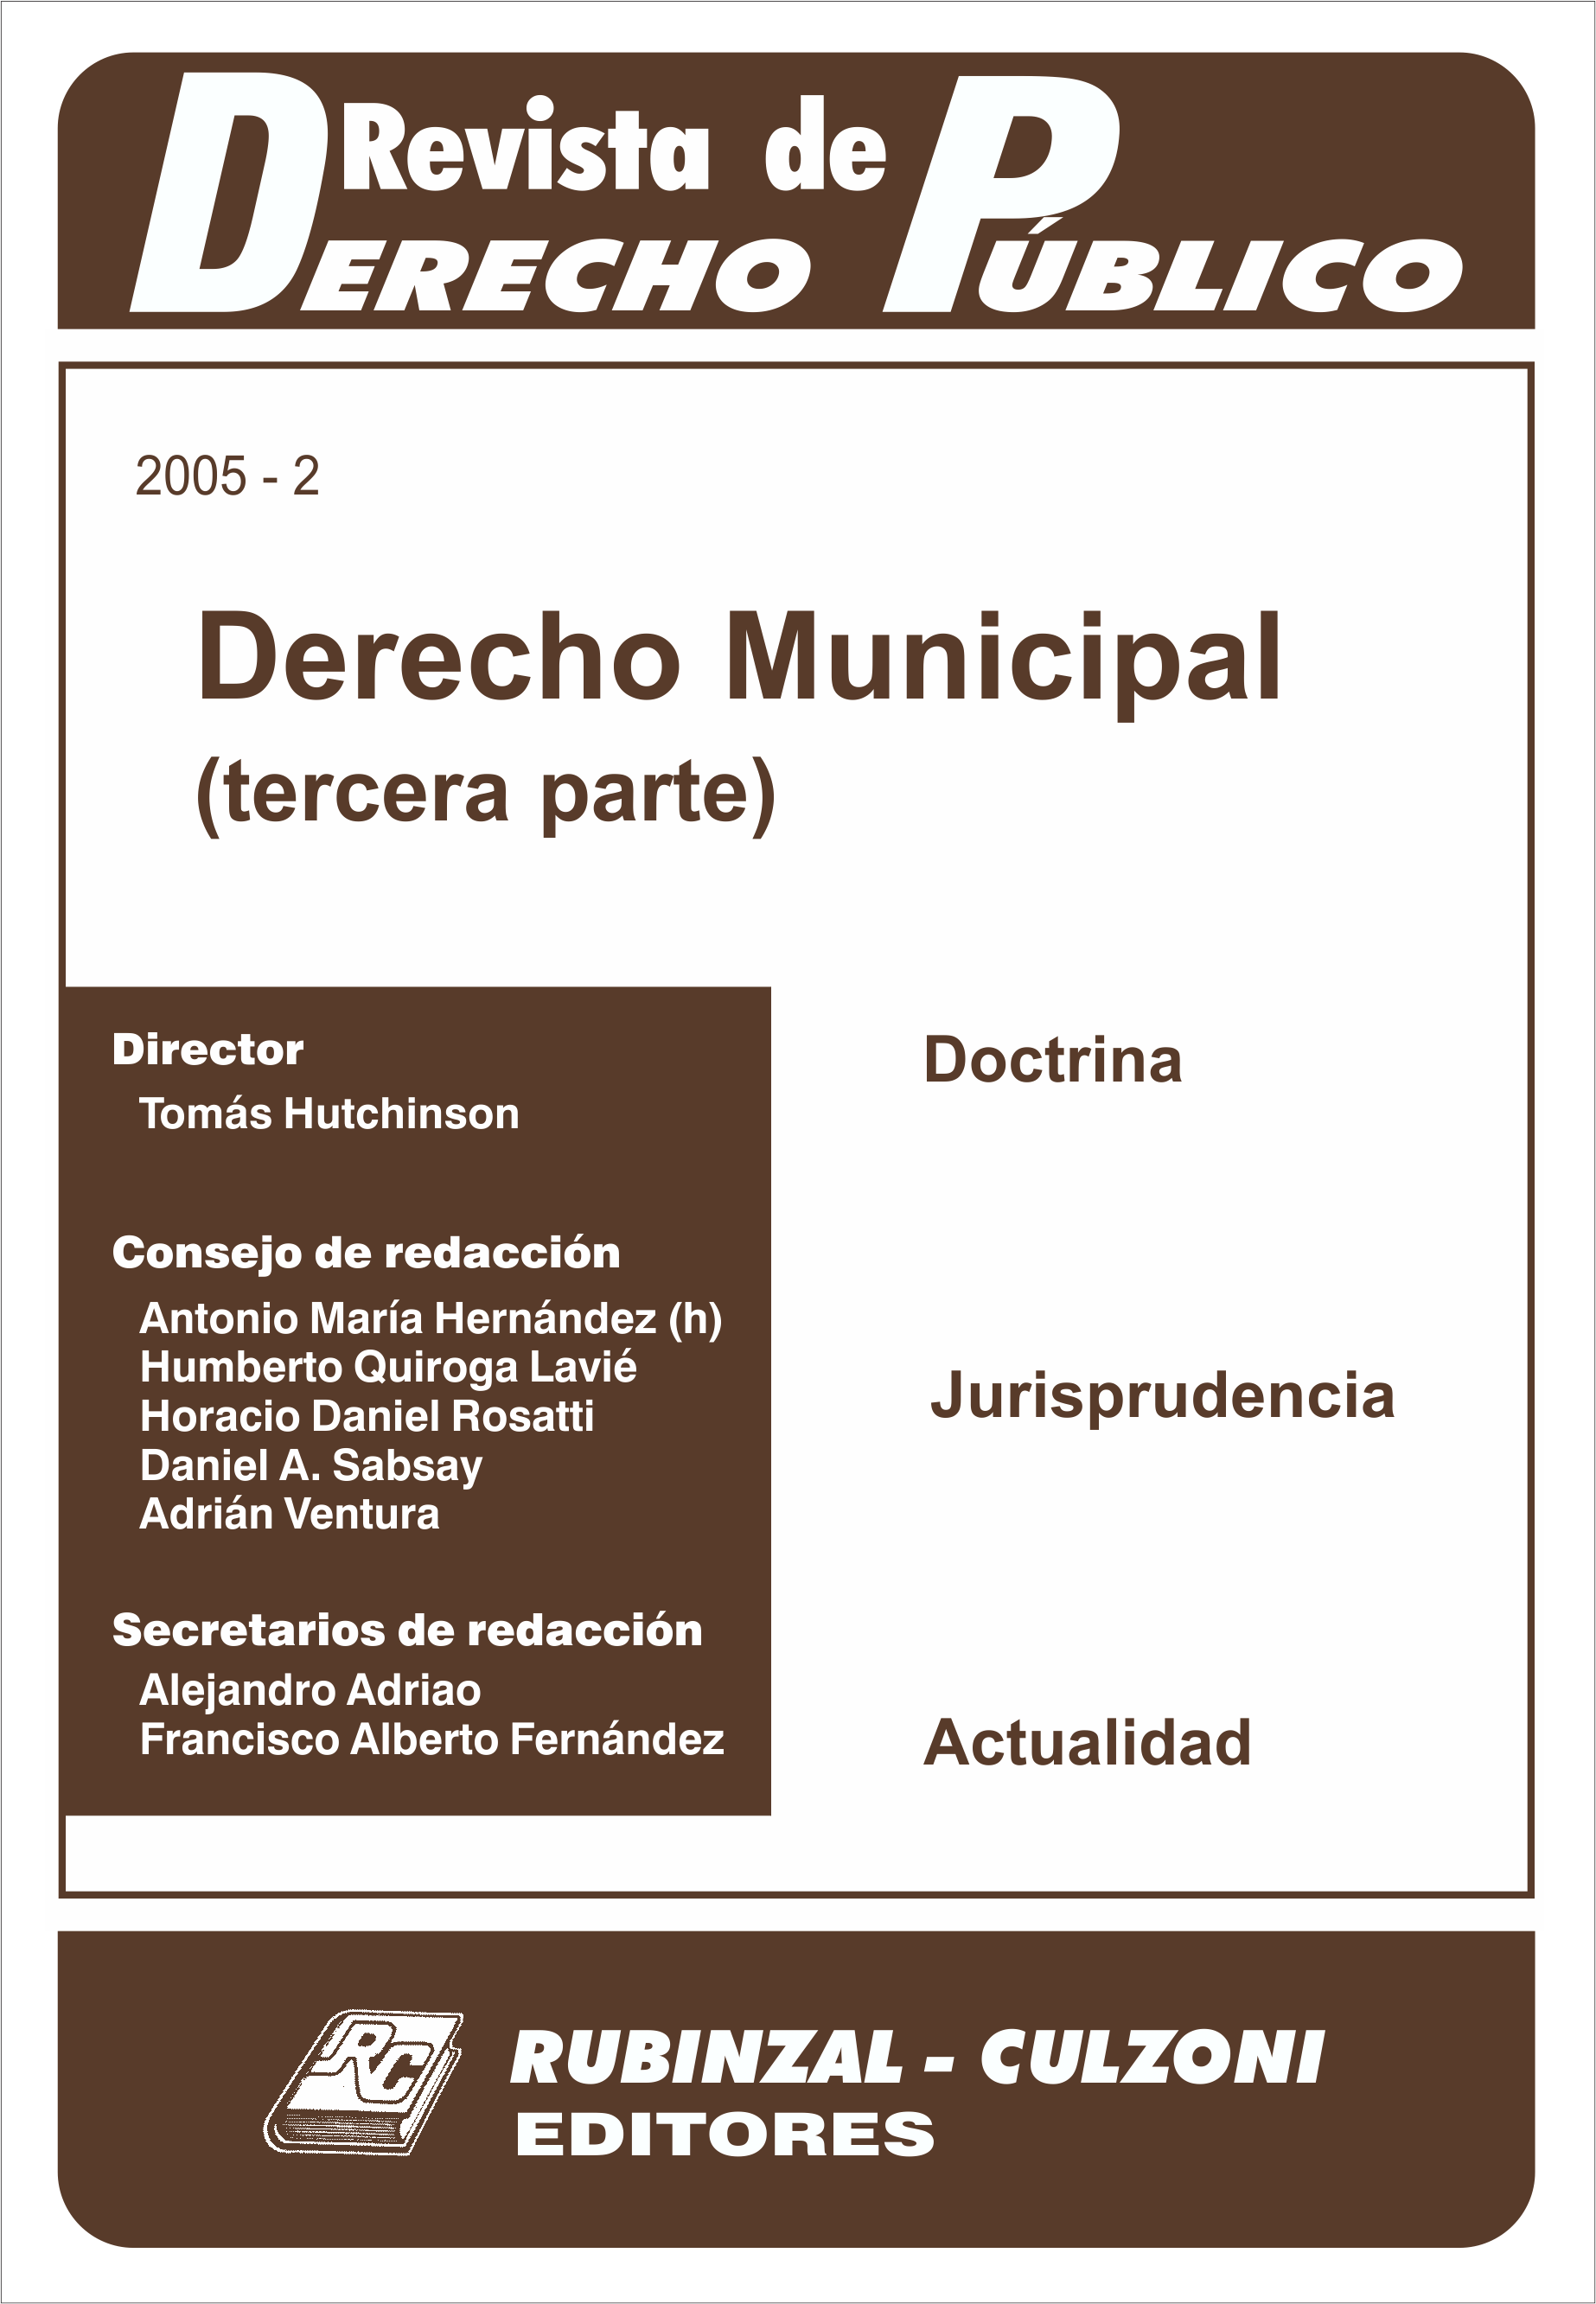 Revista de Derecho Público - Derecho Municipal 